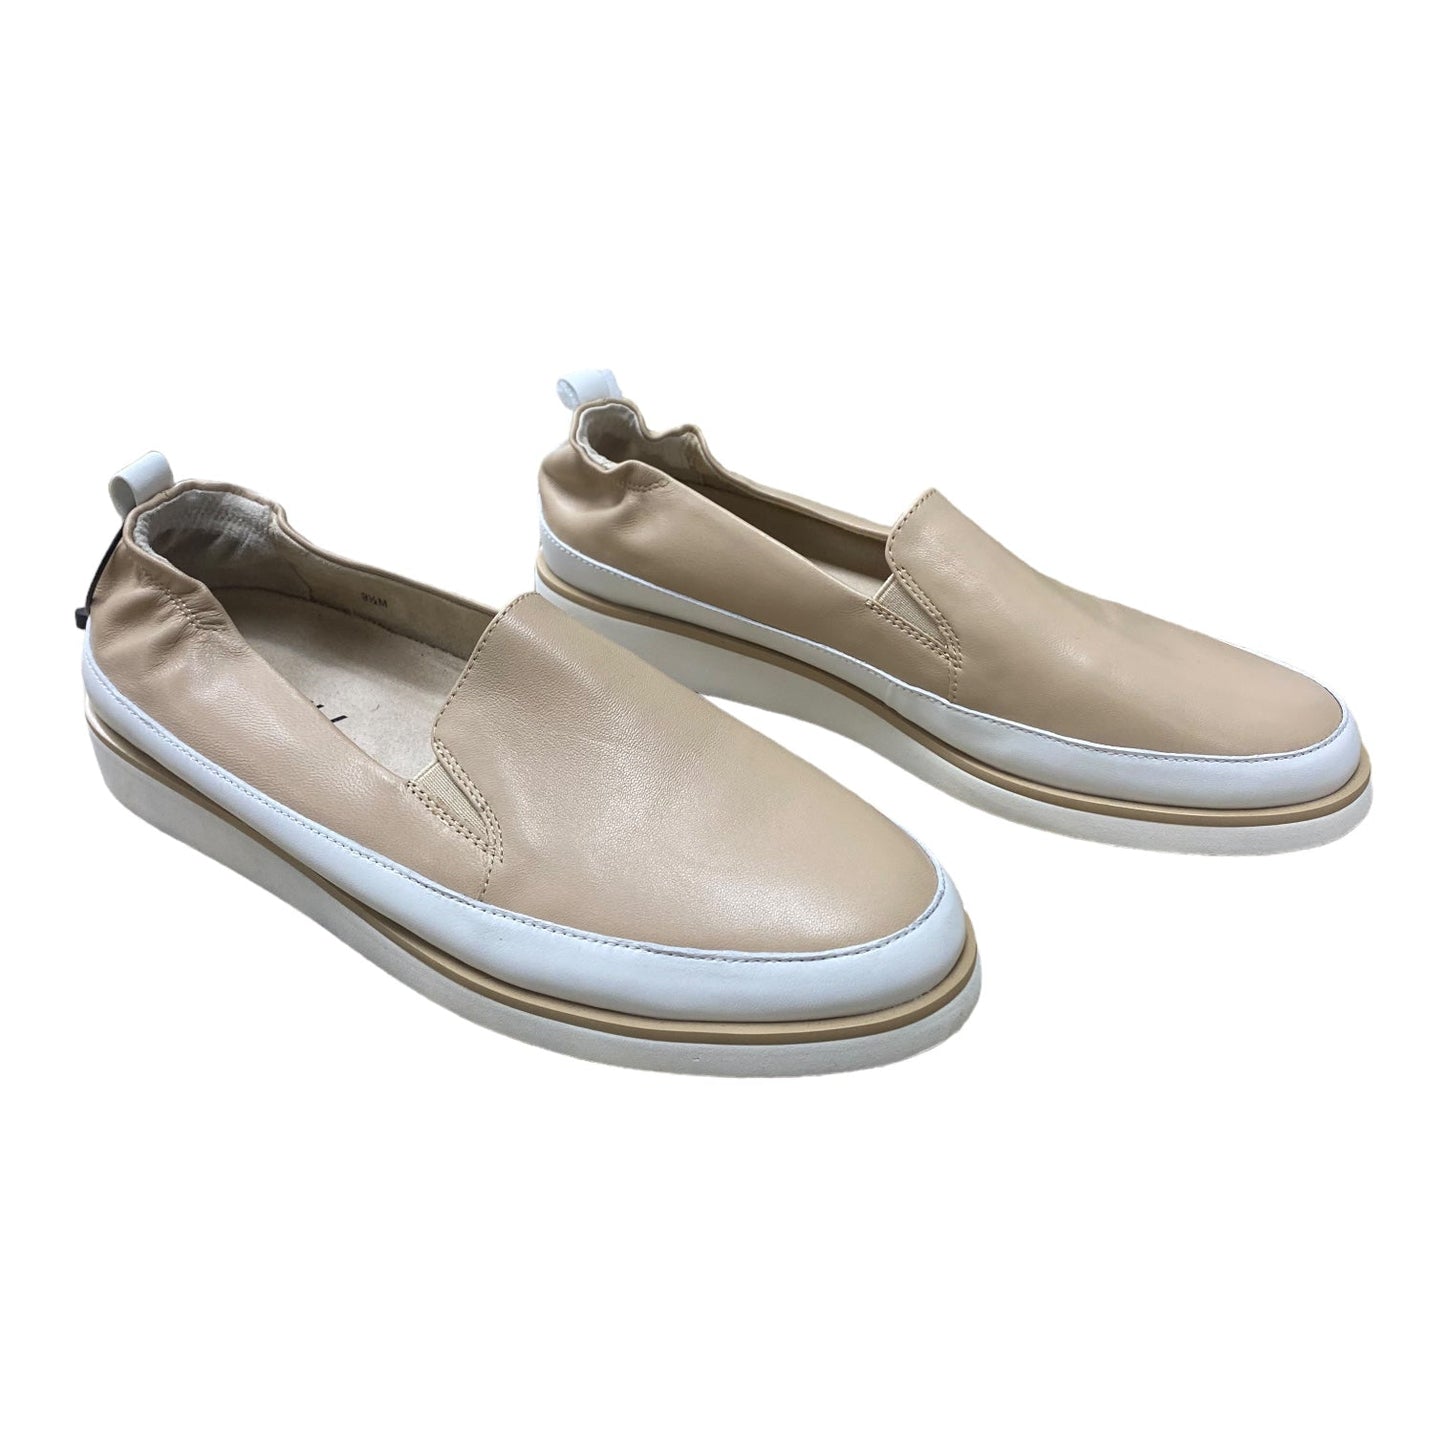 Tan & White Shoes Flats Vaneli, Size 9.5